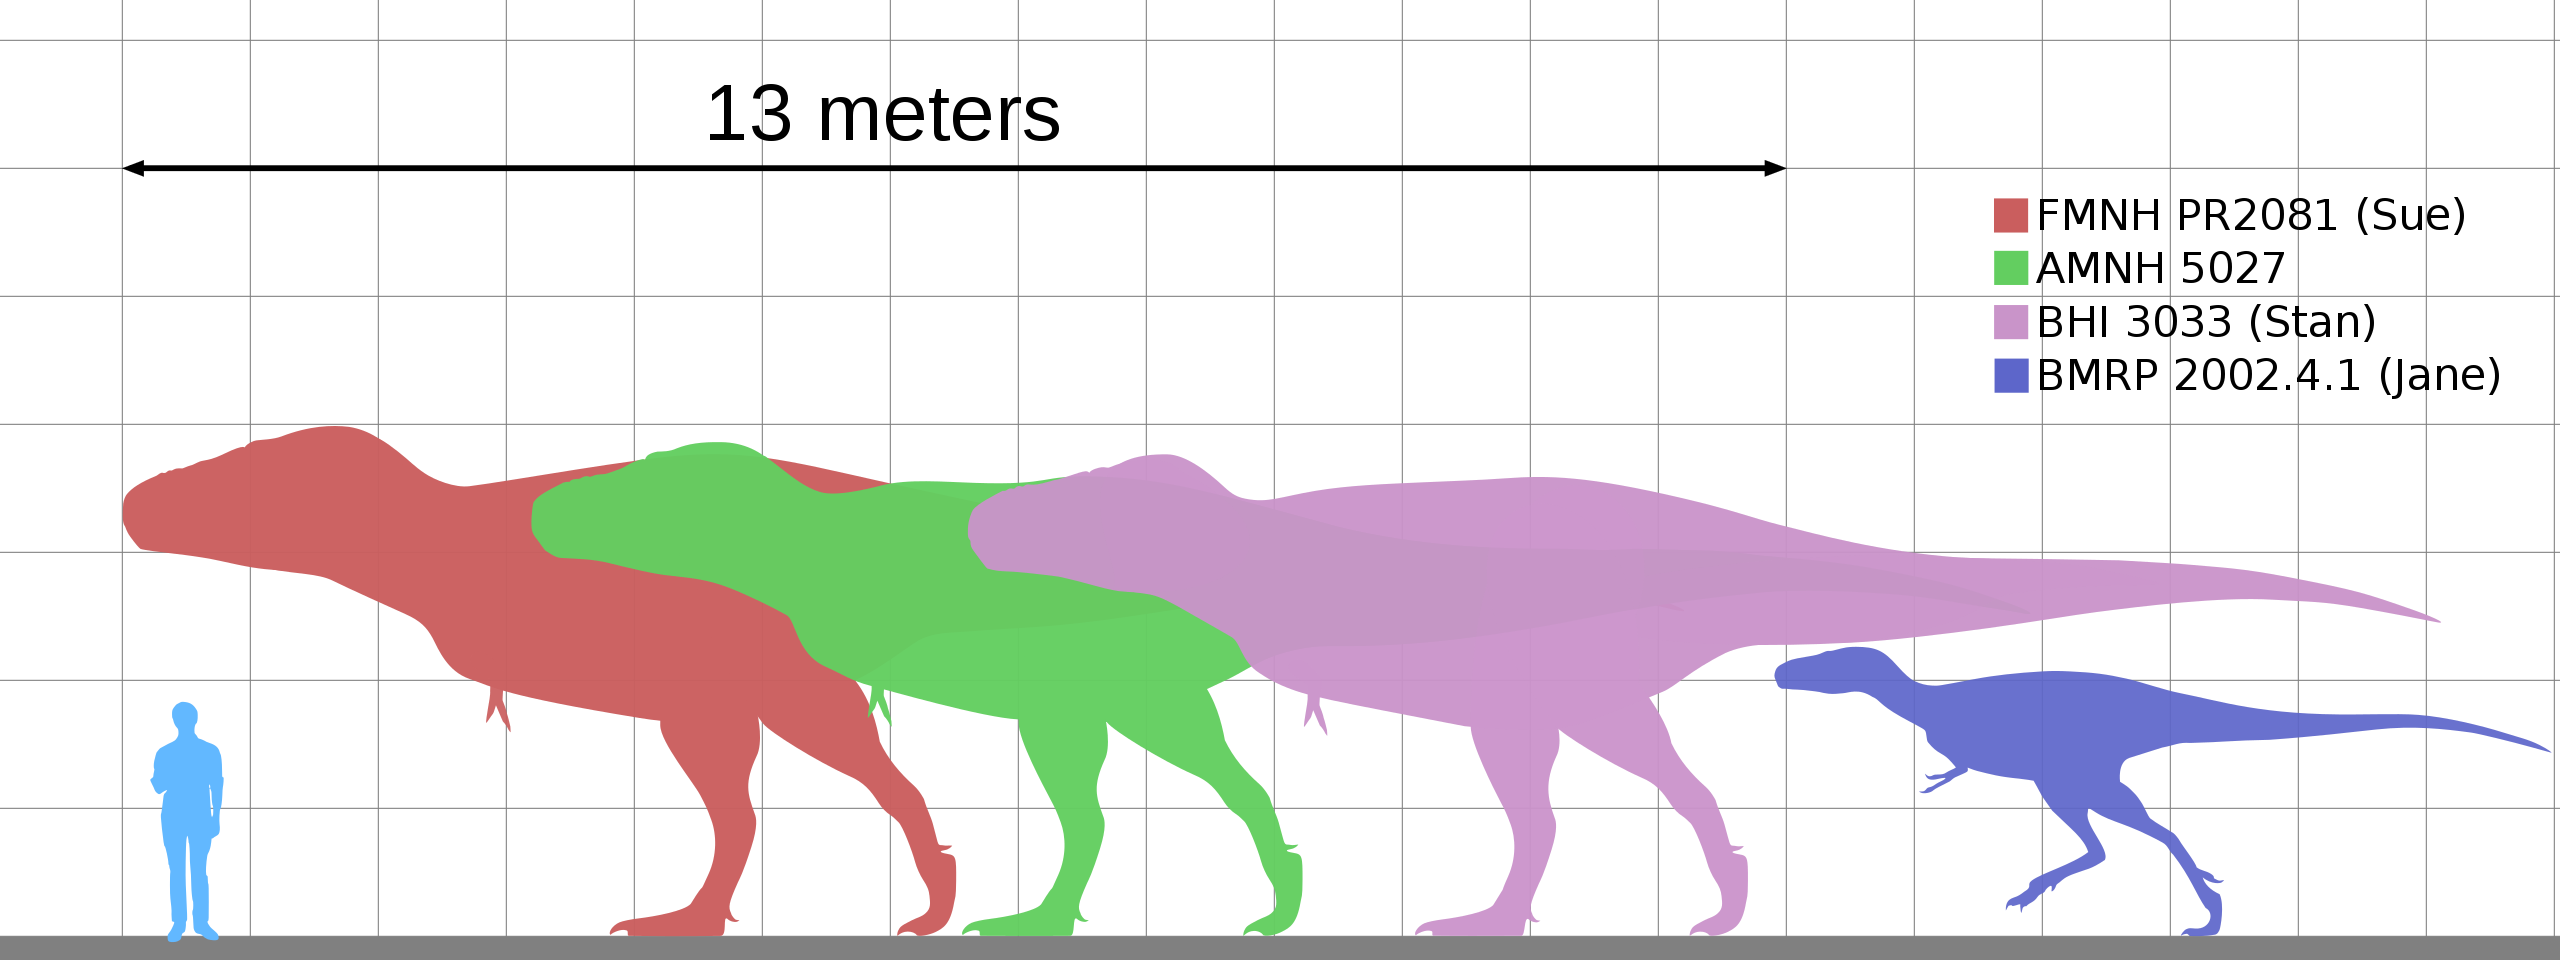 Tyranosauři rostli poměrně rychle, ačkoliv dorůst do plné velikosti jim trvalo zhruba stejně dlouho jako člověku – asi 18 až 25 let. V průběhu své ontogeneze přecházeli postupně z jedné „morfospécie“ do druhé a vyplňovali tak potravní niky pro menší,